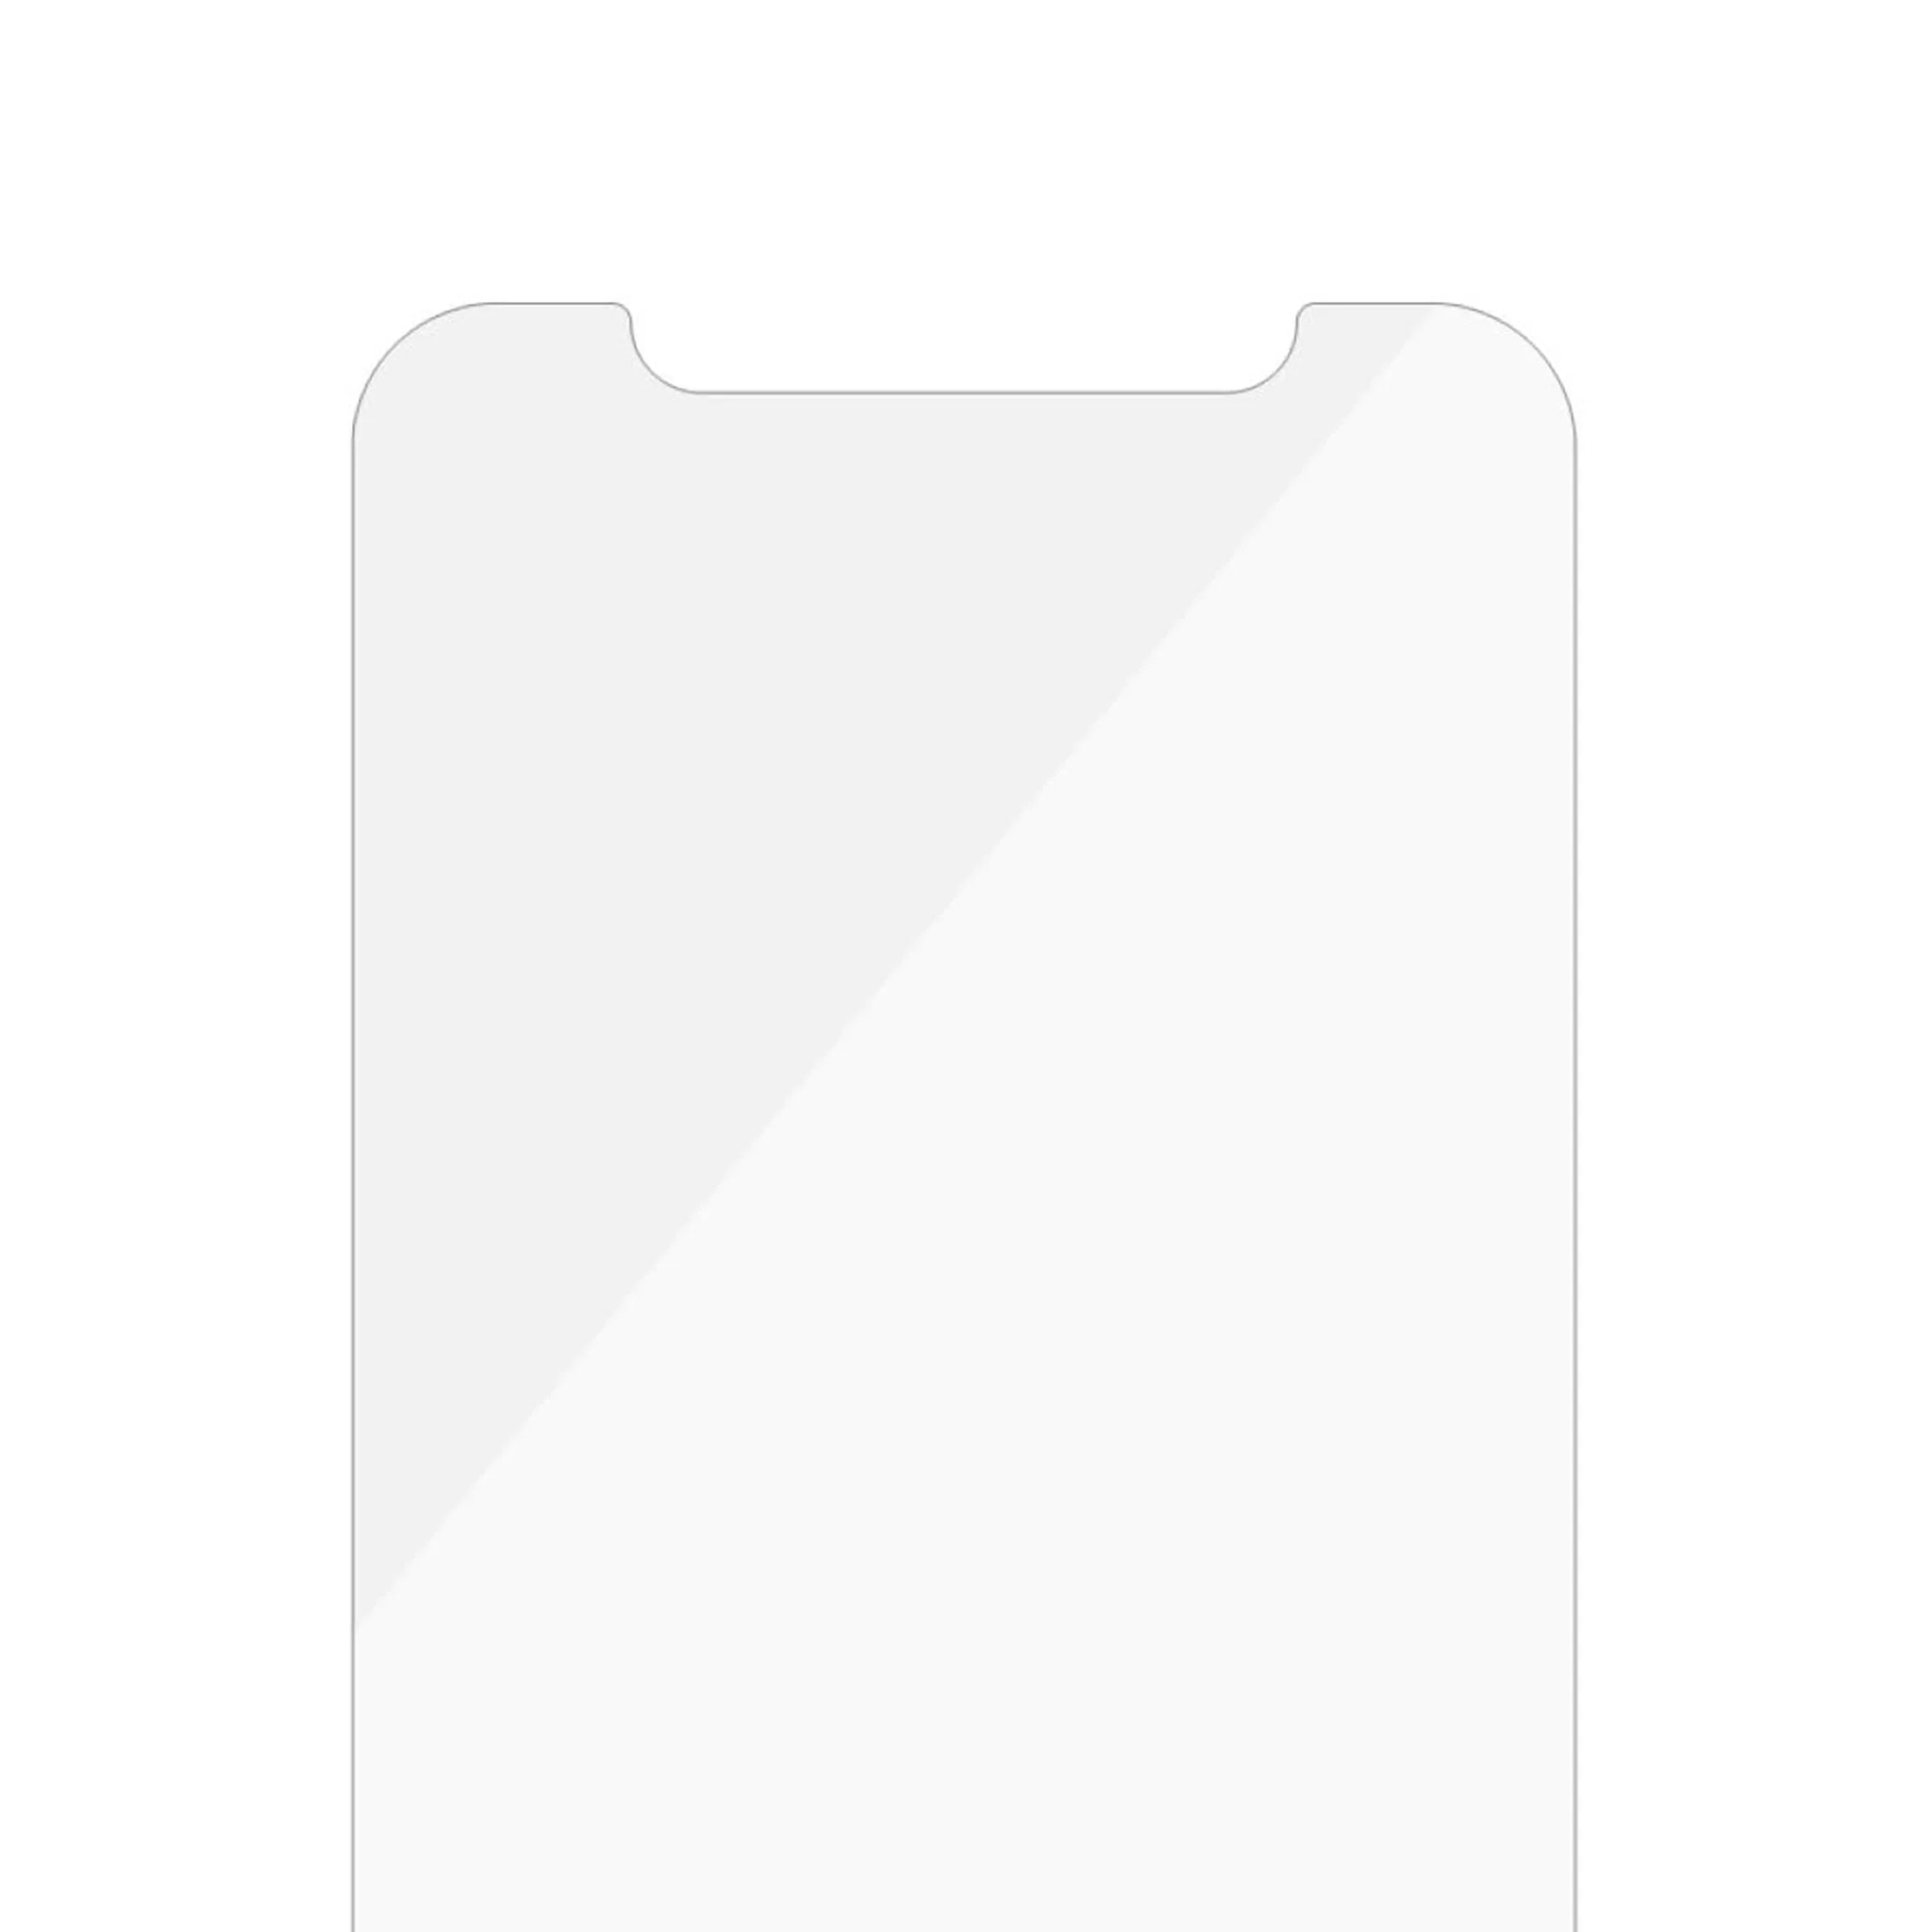 iPhone 11 Pro Displayschutz/Screen Protector